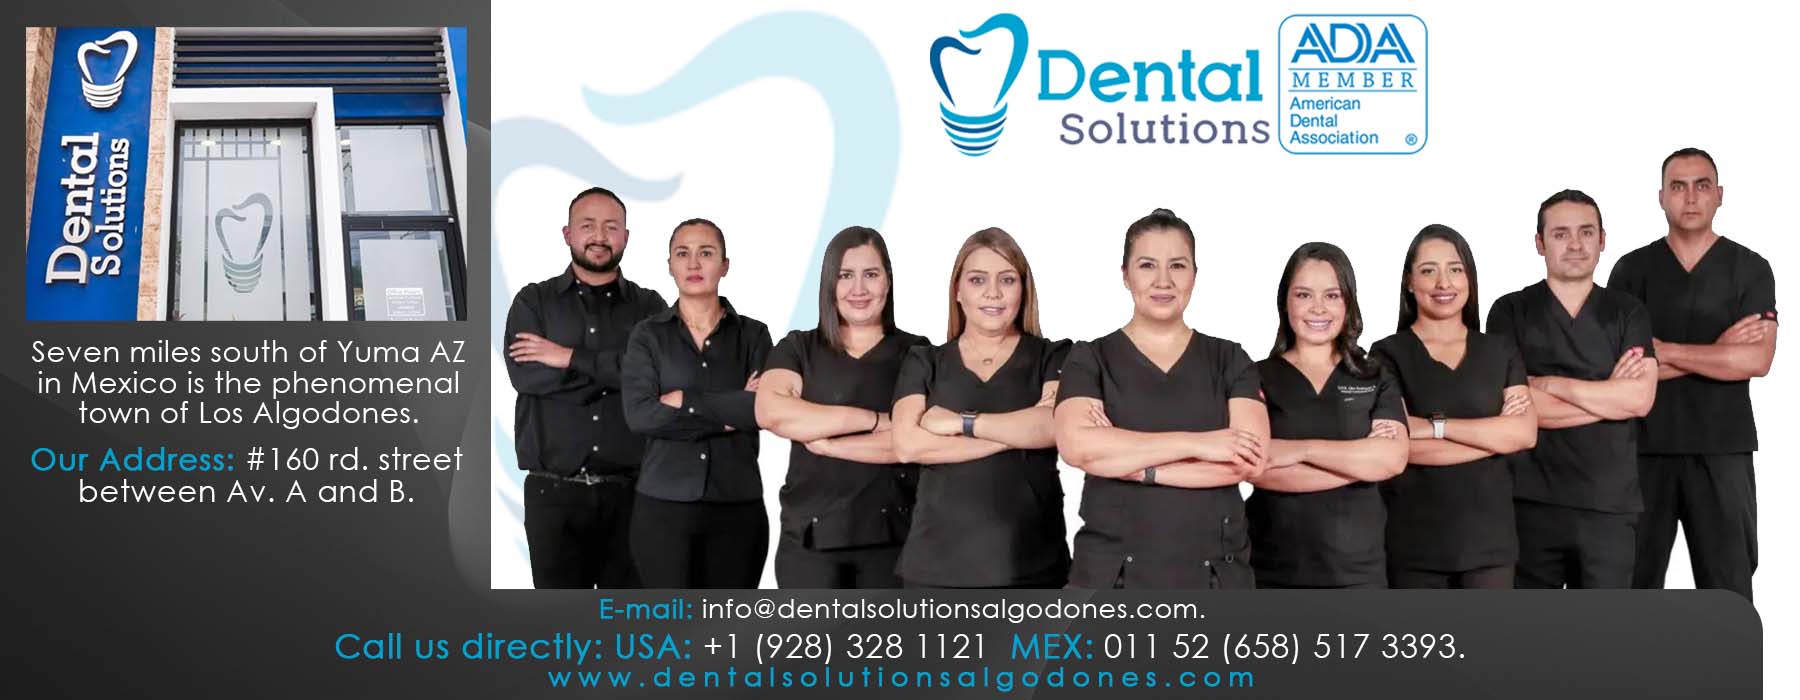  Dental Solutions